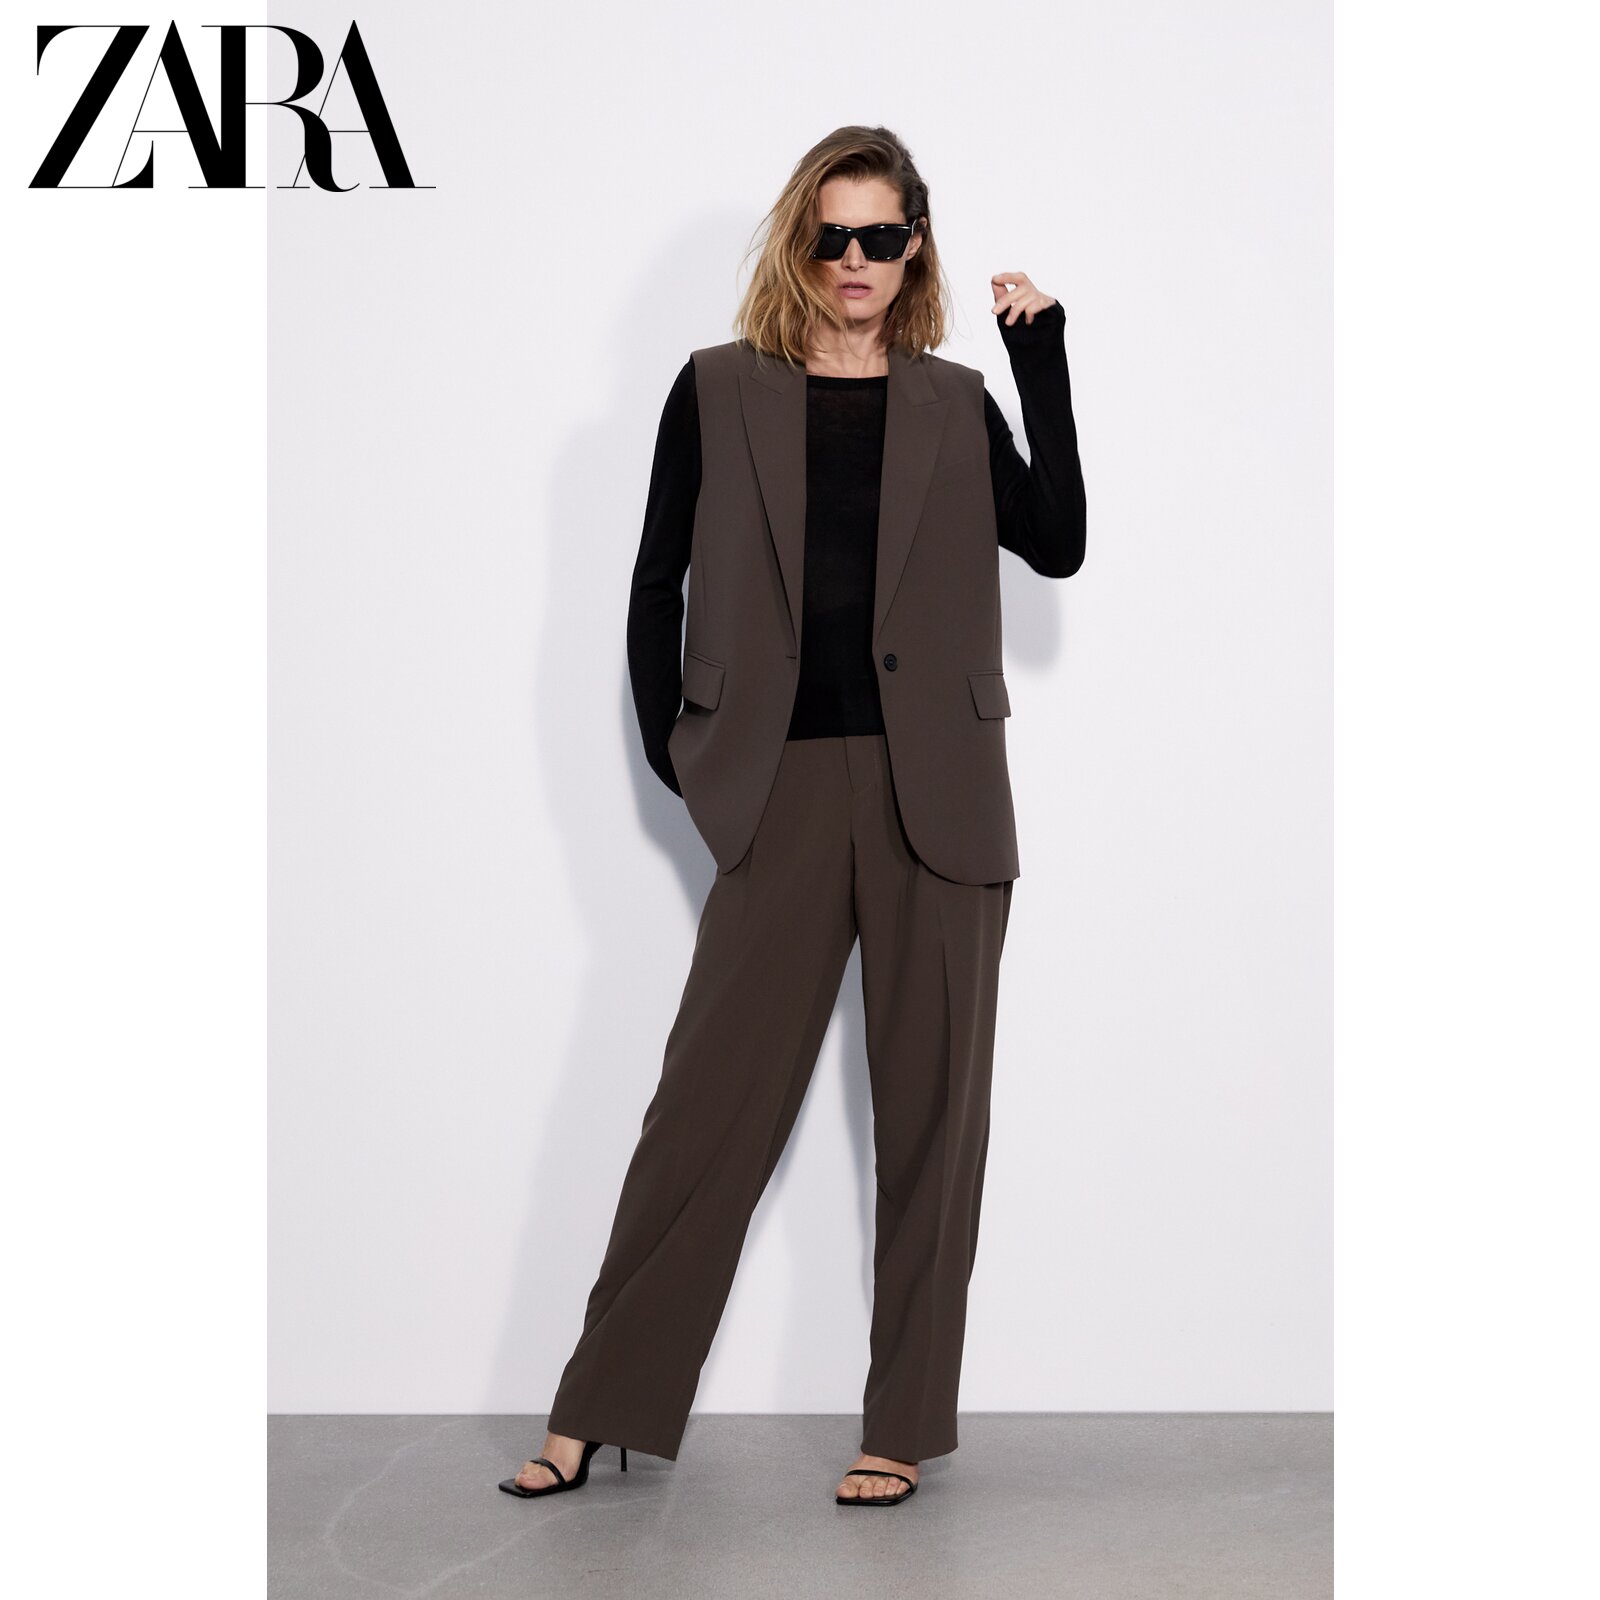 Zara New Women's Black Essential Sweater Knitwear 1509015 800